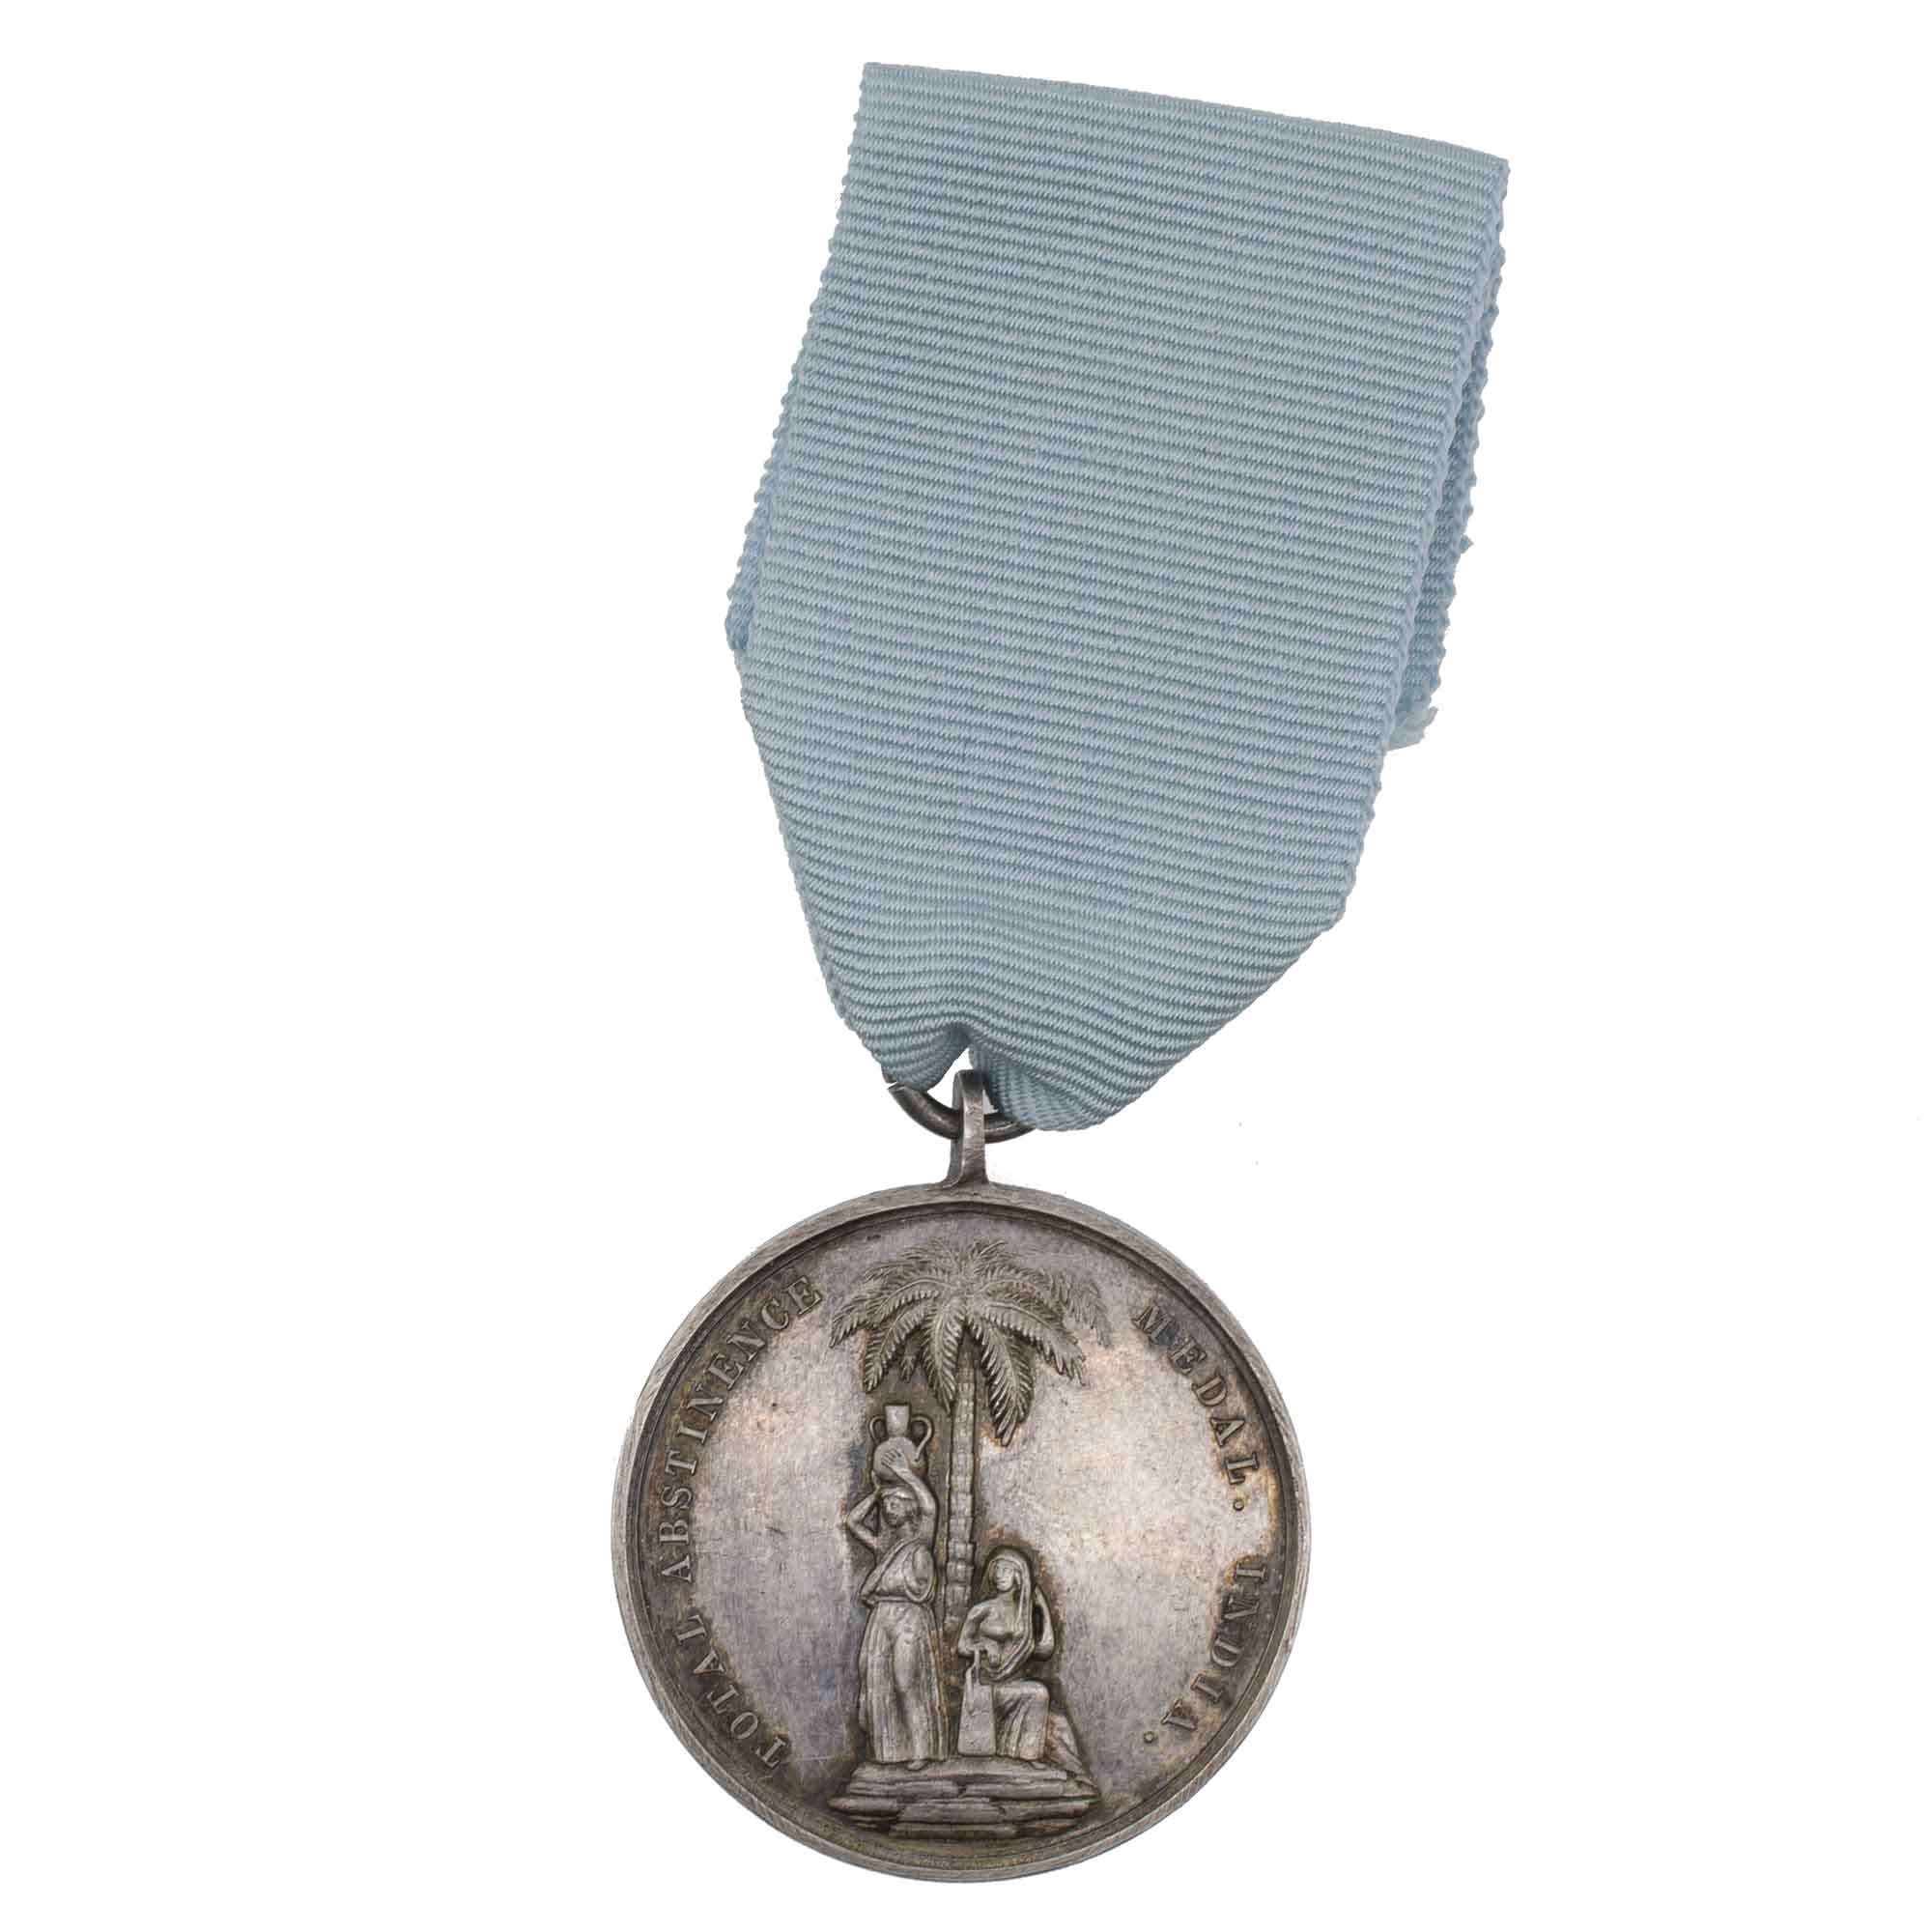 Великобритания. Серебряная медаль "Полного воздержания" 1862 г, / "Медаль Грегсона".